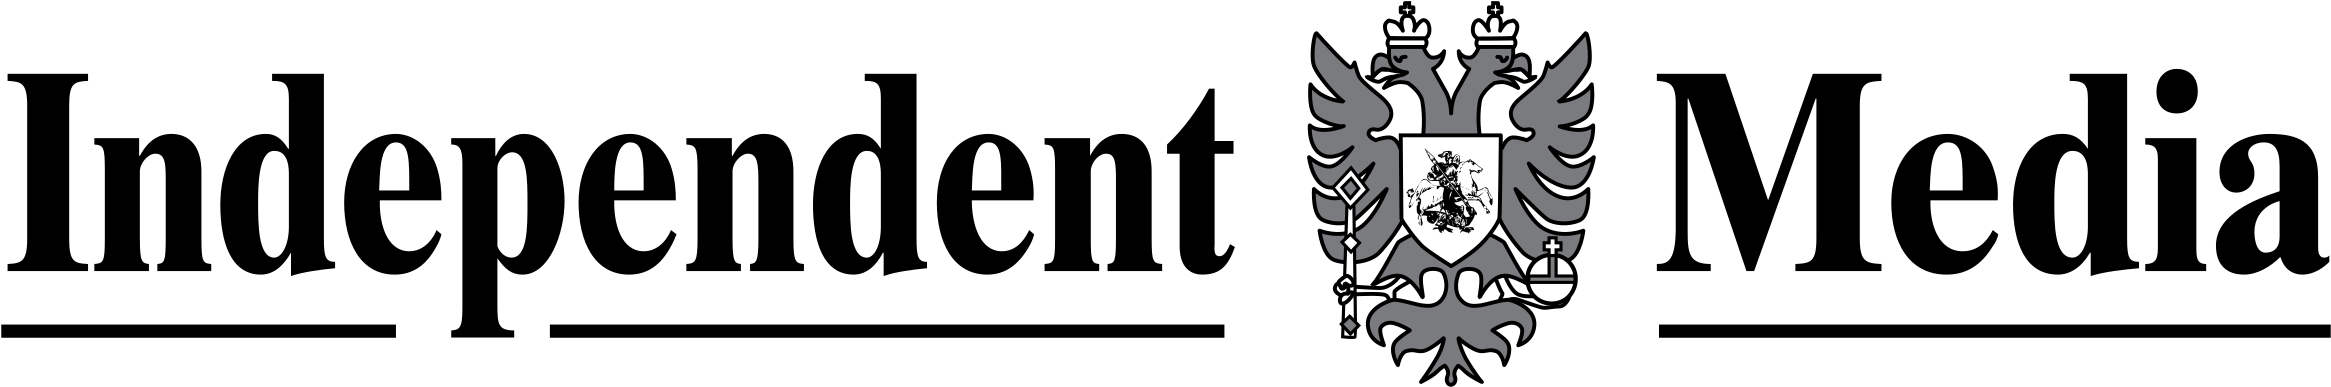 Independent Media Logo PNG